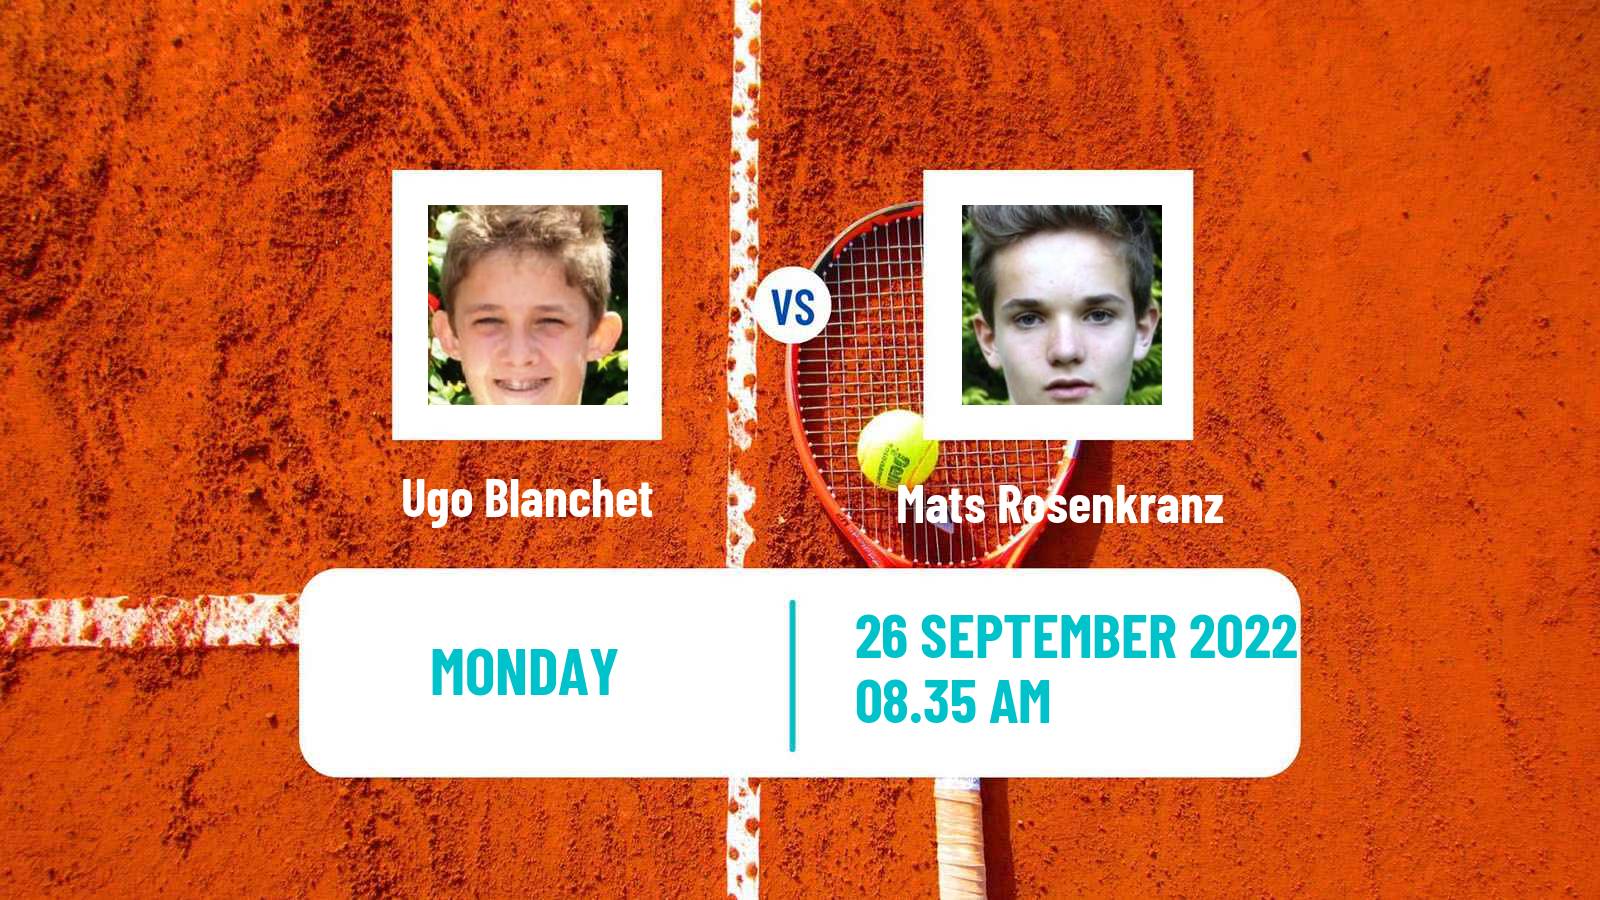 Tennis ATP Challenger Ugo Blanchet - Mats Rosenkranz